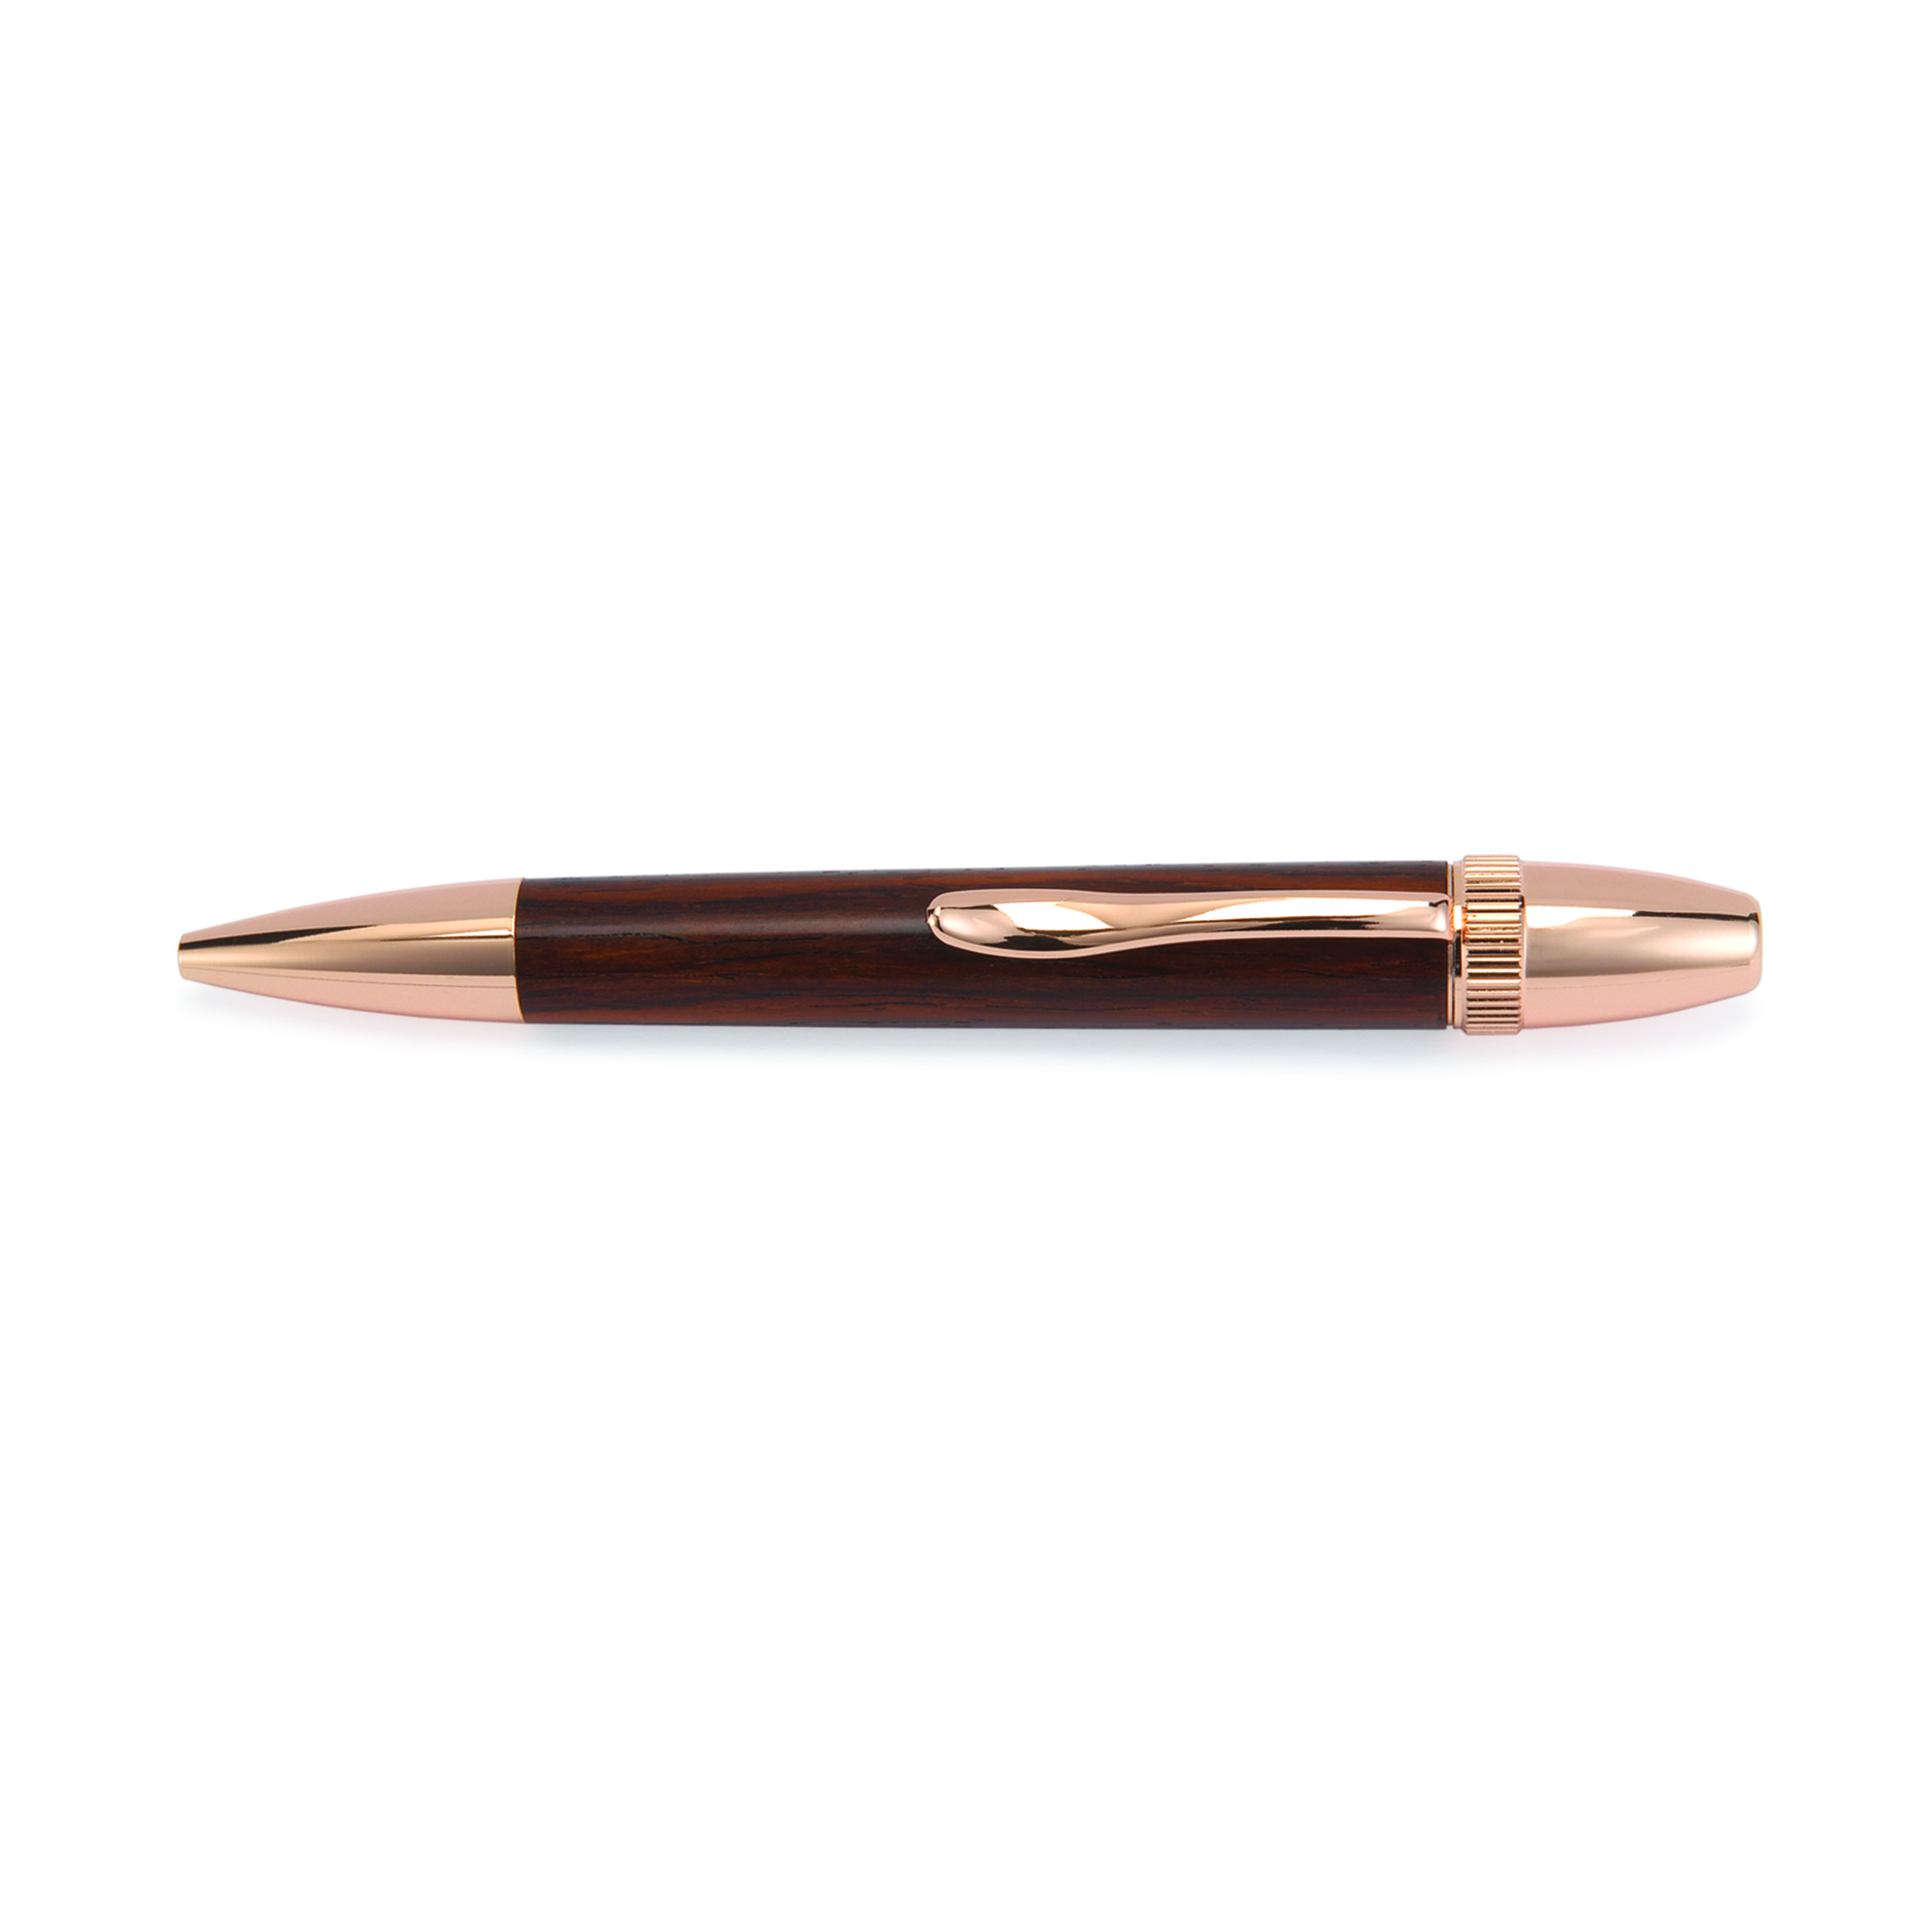 Atlas Ballpoint Pen Kit - Bright Copper